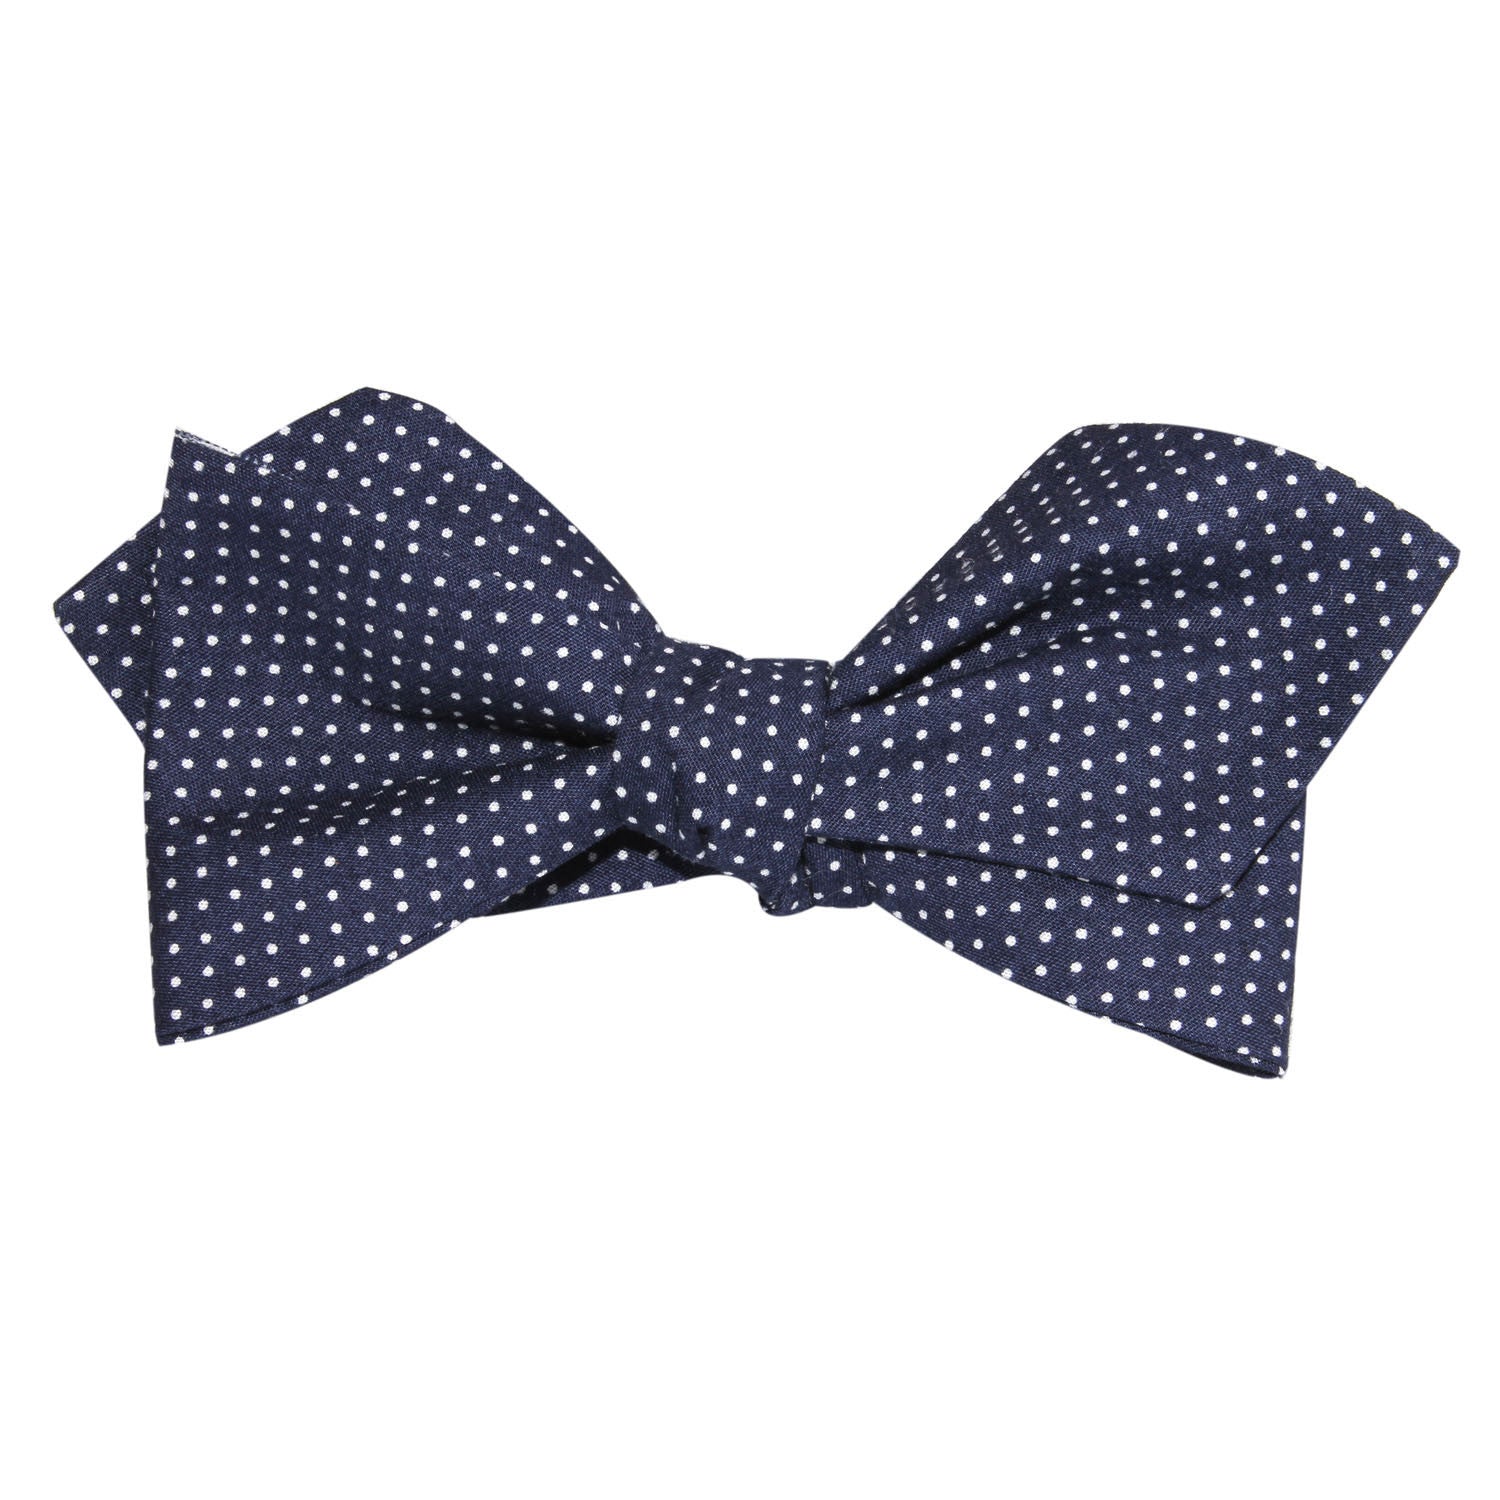 Navy Blue Cotton with White Mini Polka Dots Self Tie Diamond Tip Bow Tie 2